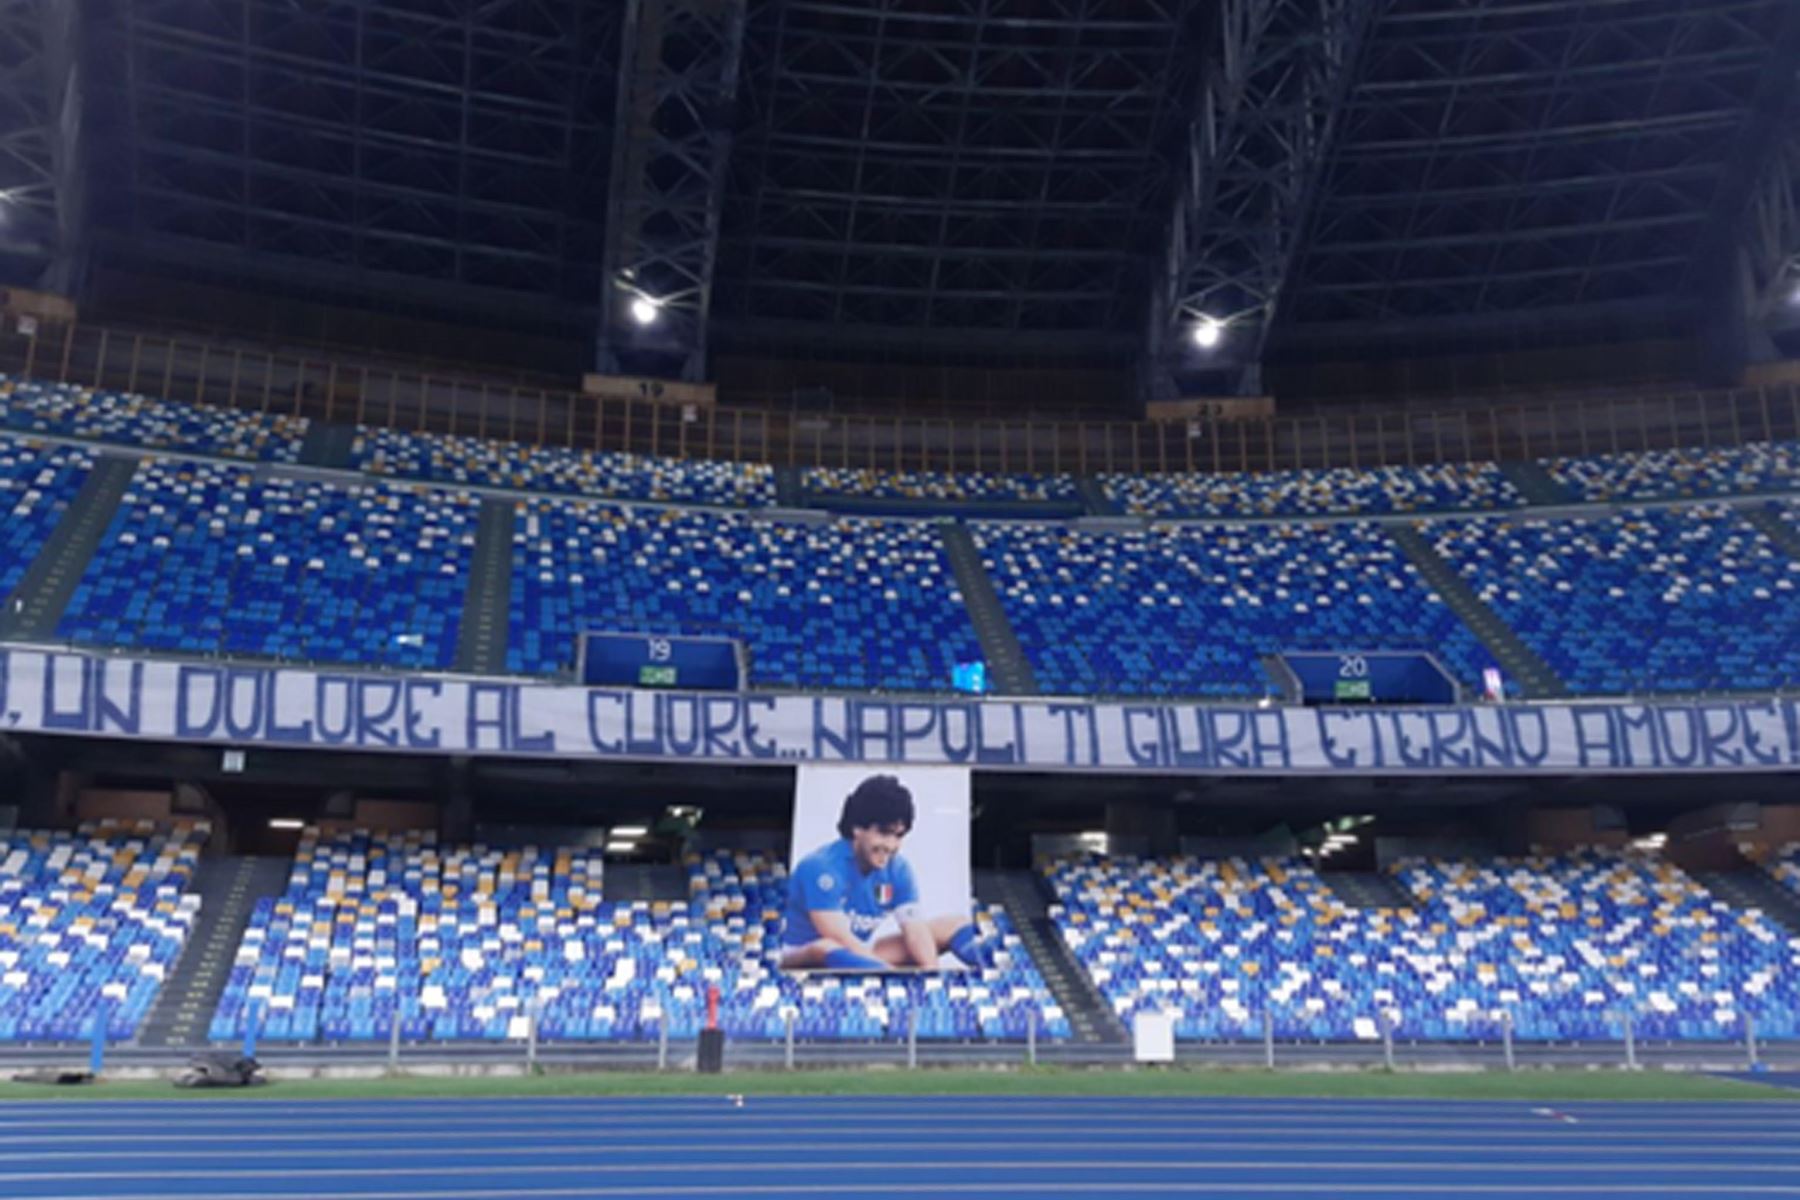 Una pancarta exhibida en el estadio de San Paolo como tributo a Diego Armando Maradona antes del partido de fútbol de la Serie A italiana  Napoli vs AS Roma, Nápoles, Italia.
Foto: EFE